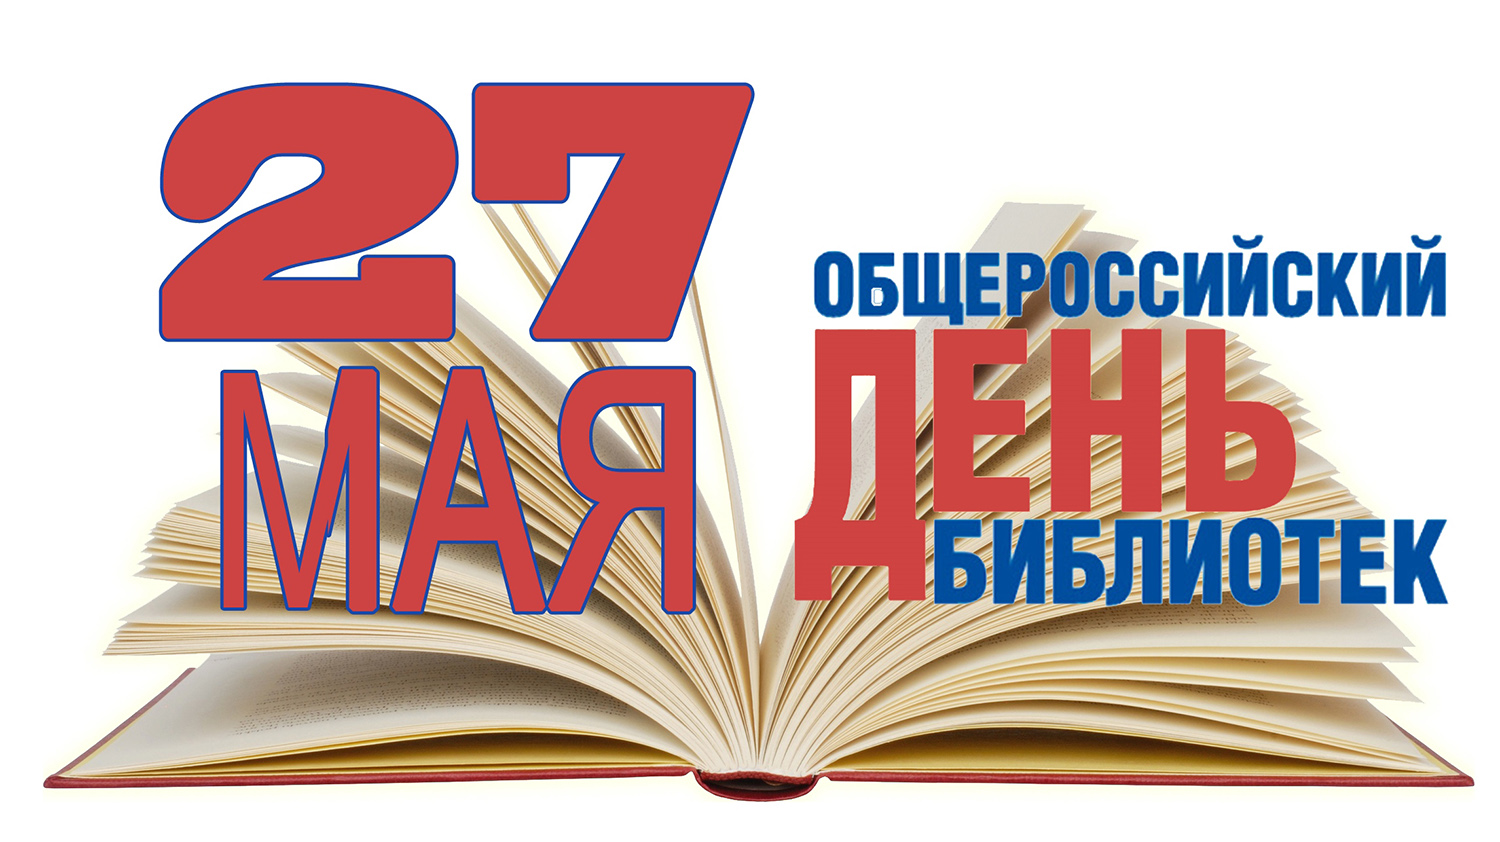 27 мая – Общероссийский день библиотек